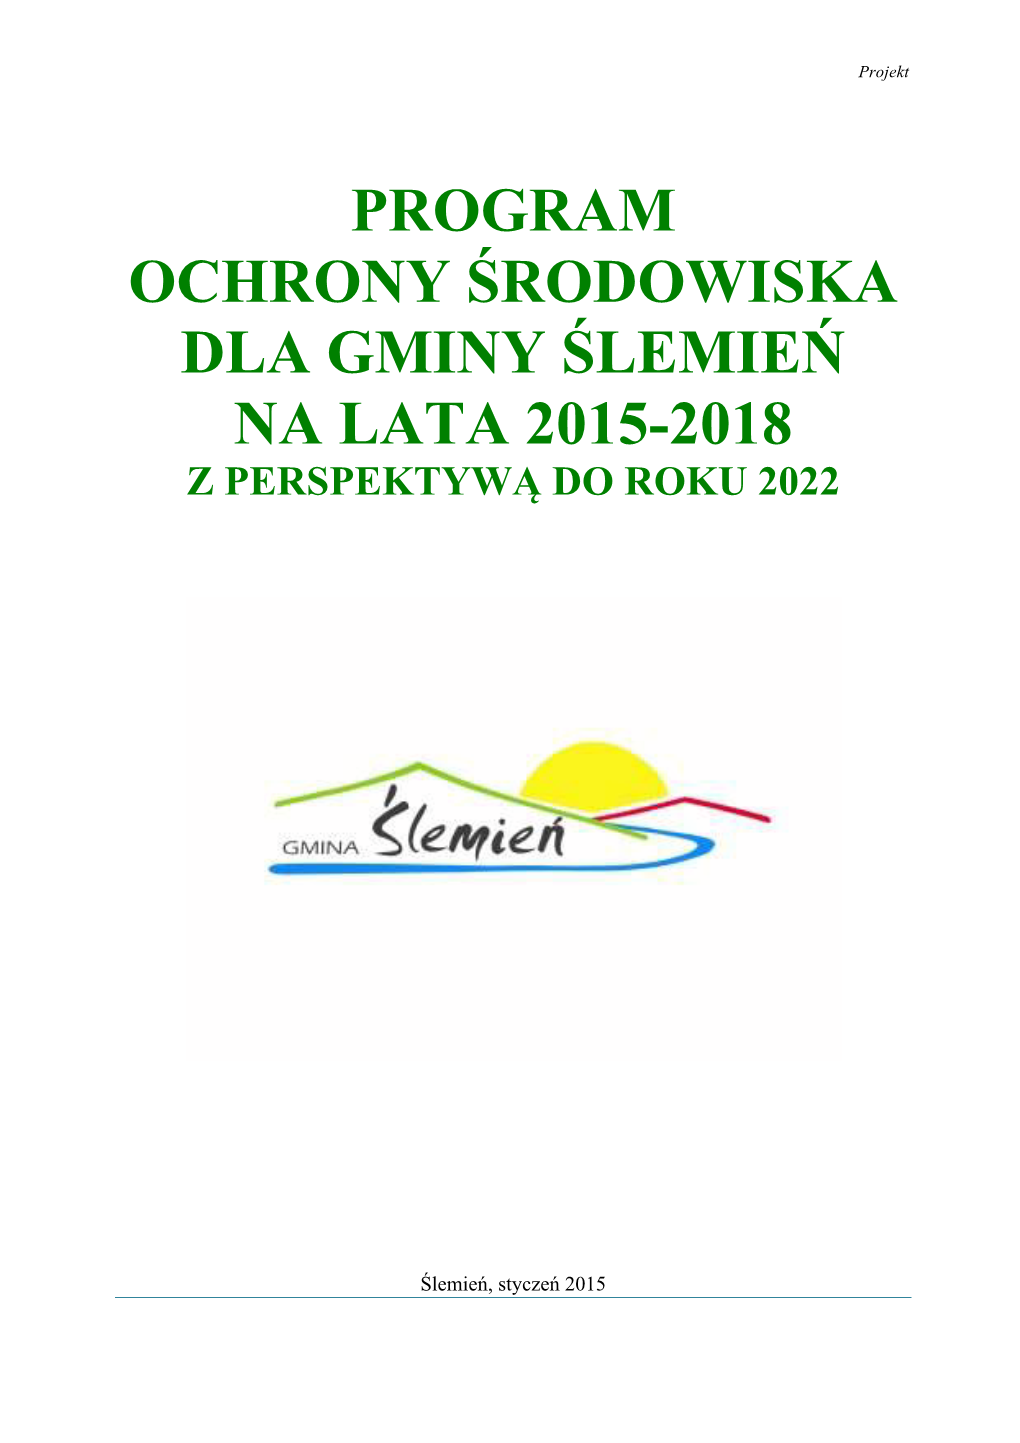 Program Ochrony Środowiska Dla Gminy Ślemień Na Lata 2015-2018